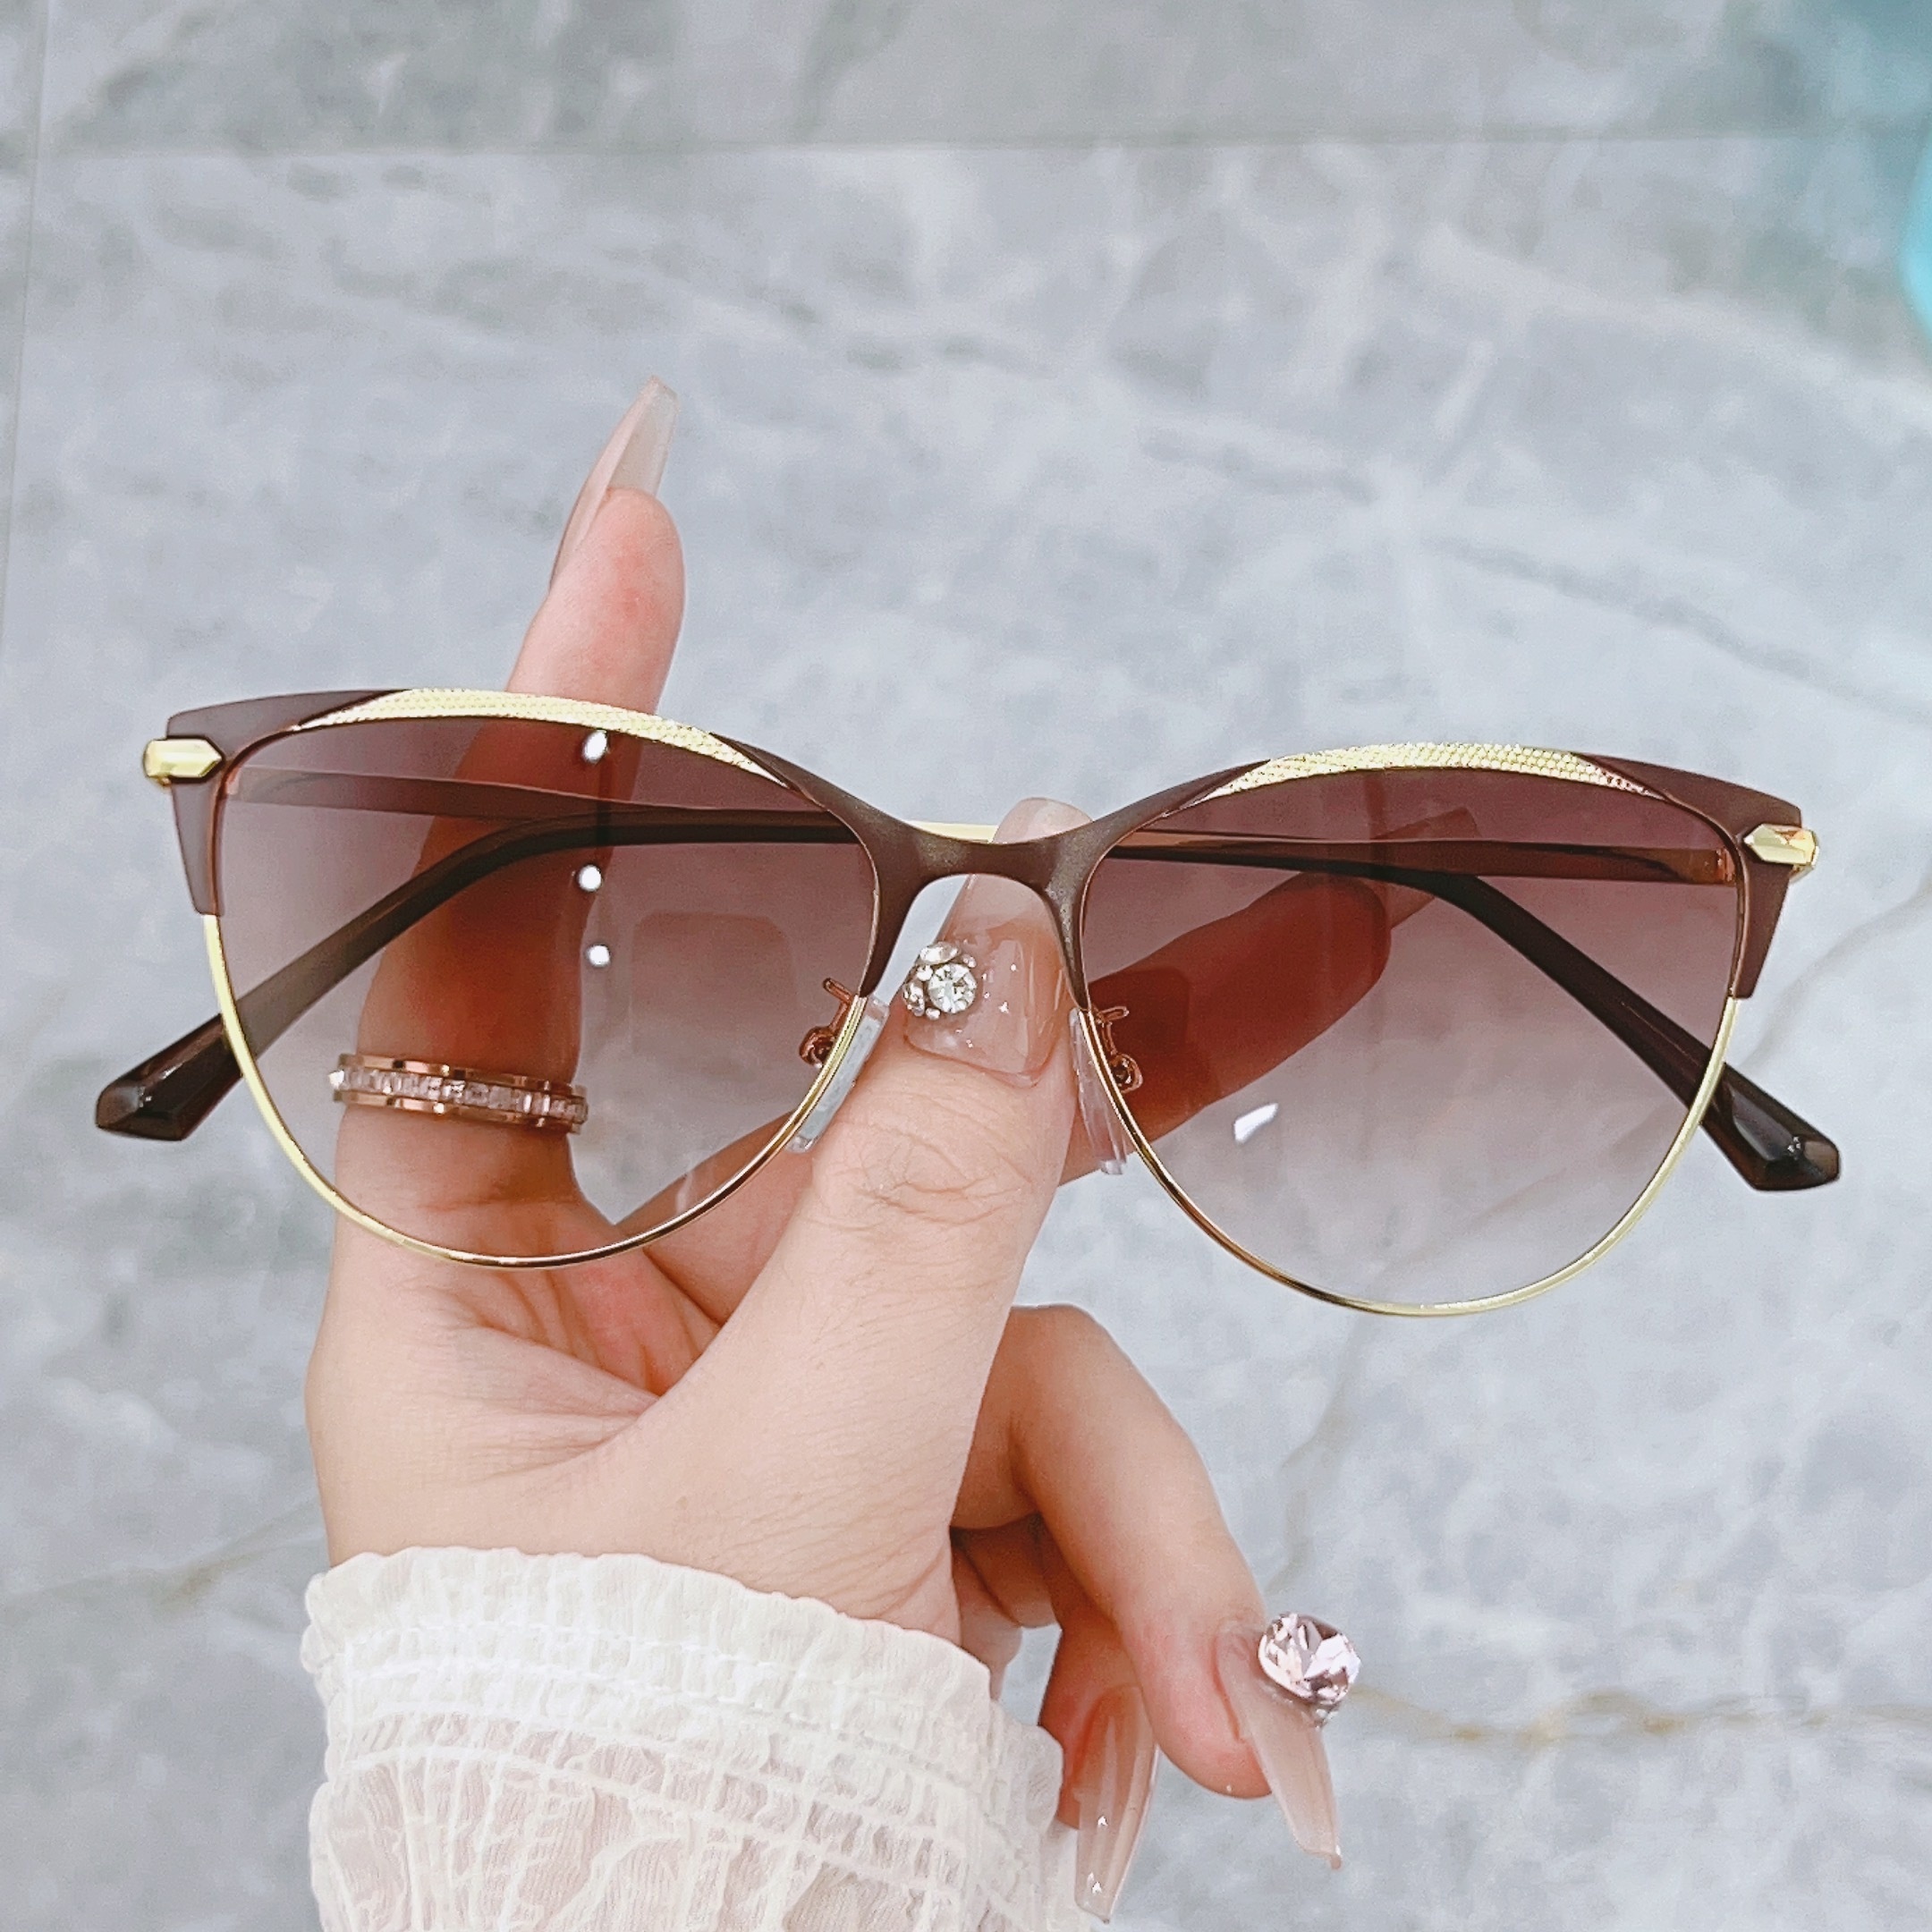 Women's Sunglasses, Round & Cat Eye Glasses